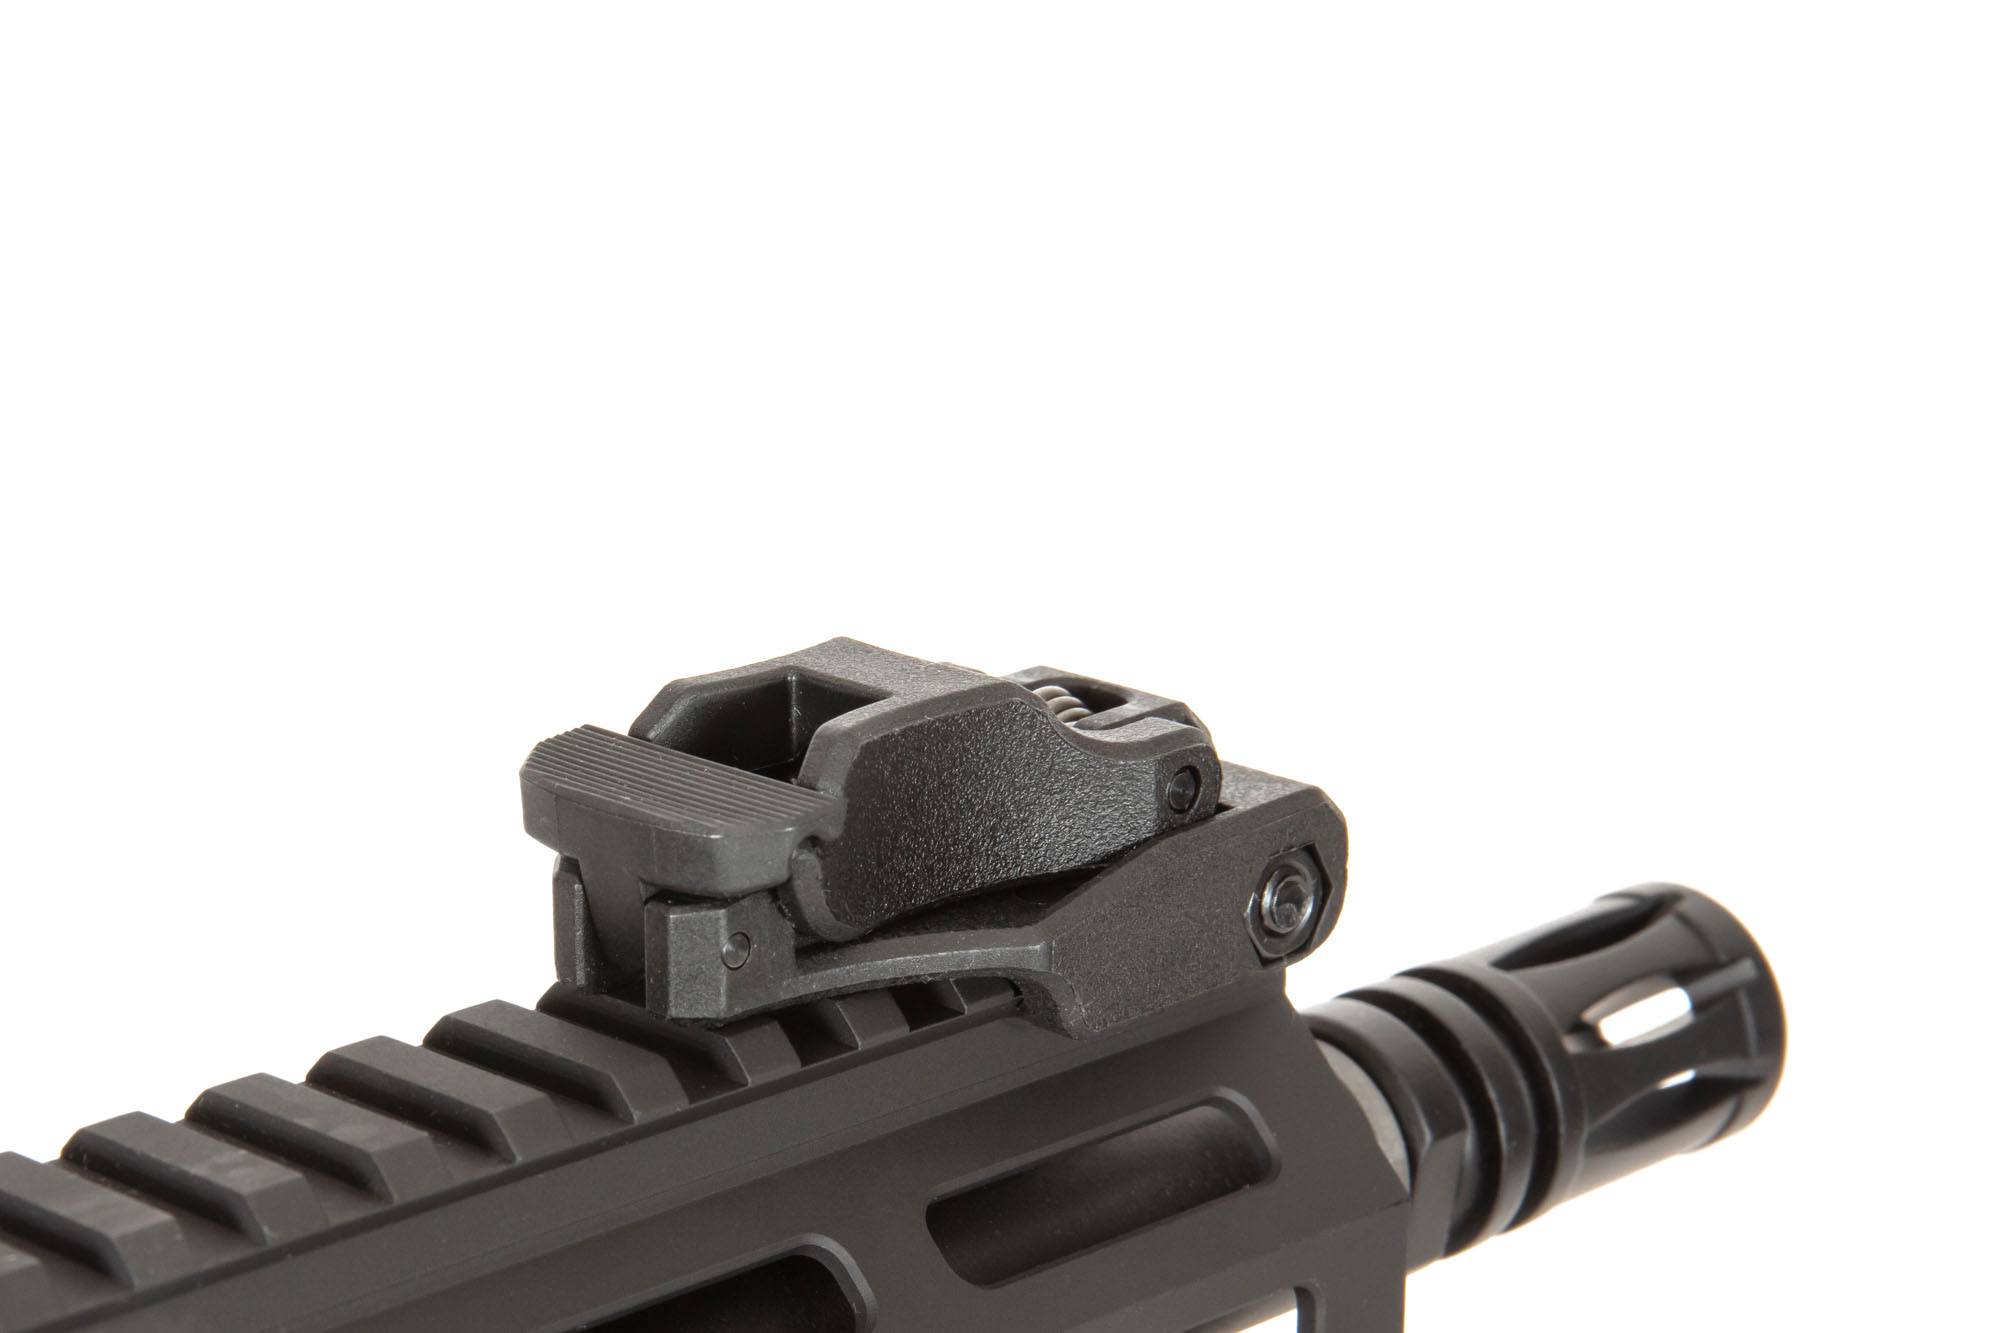 SA-C23 CORE™ Carbine Replica – Schwarz